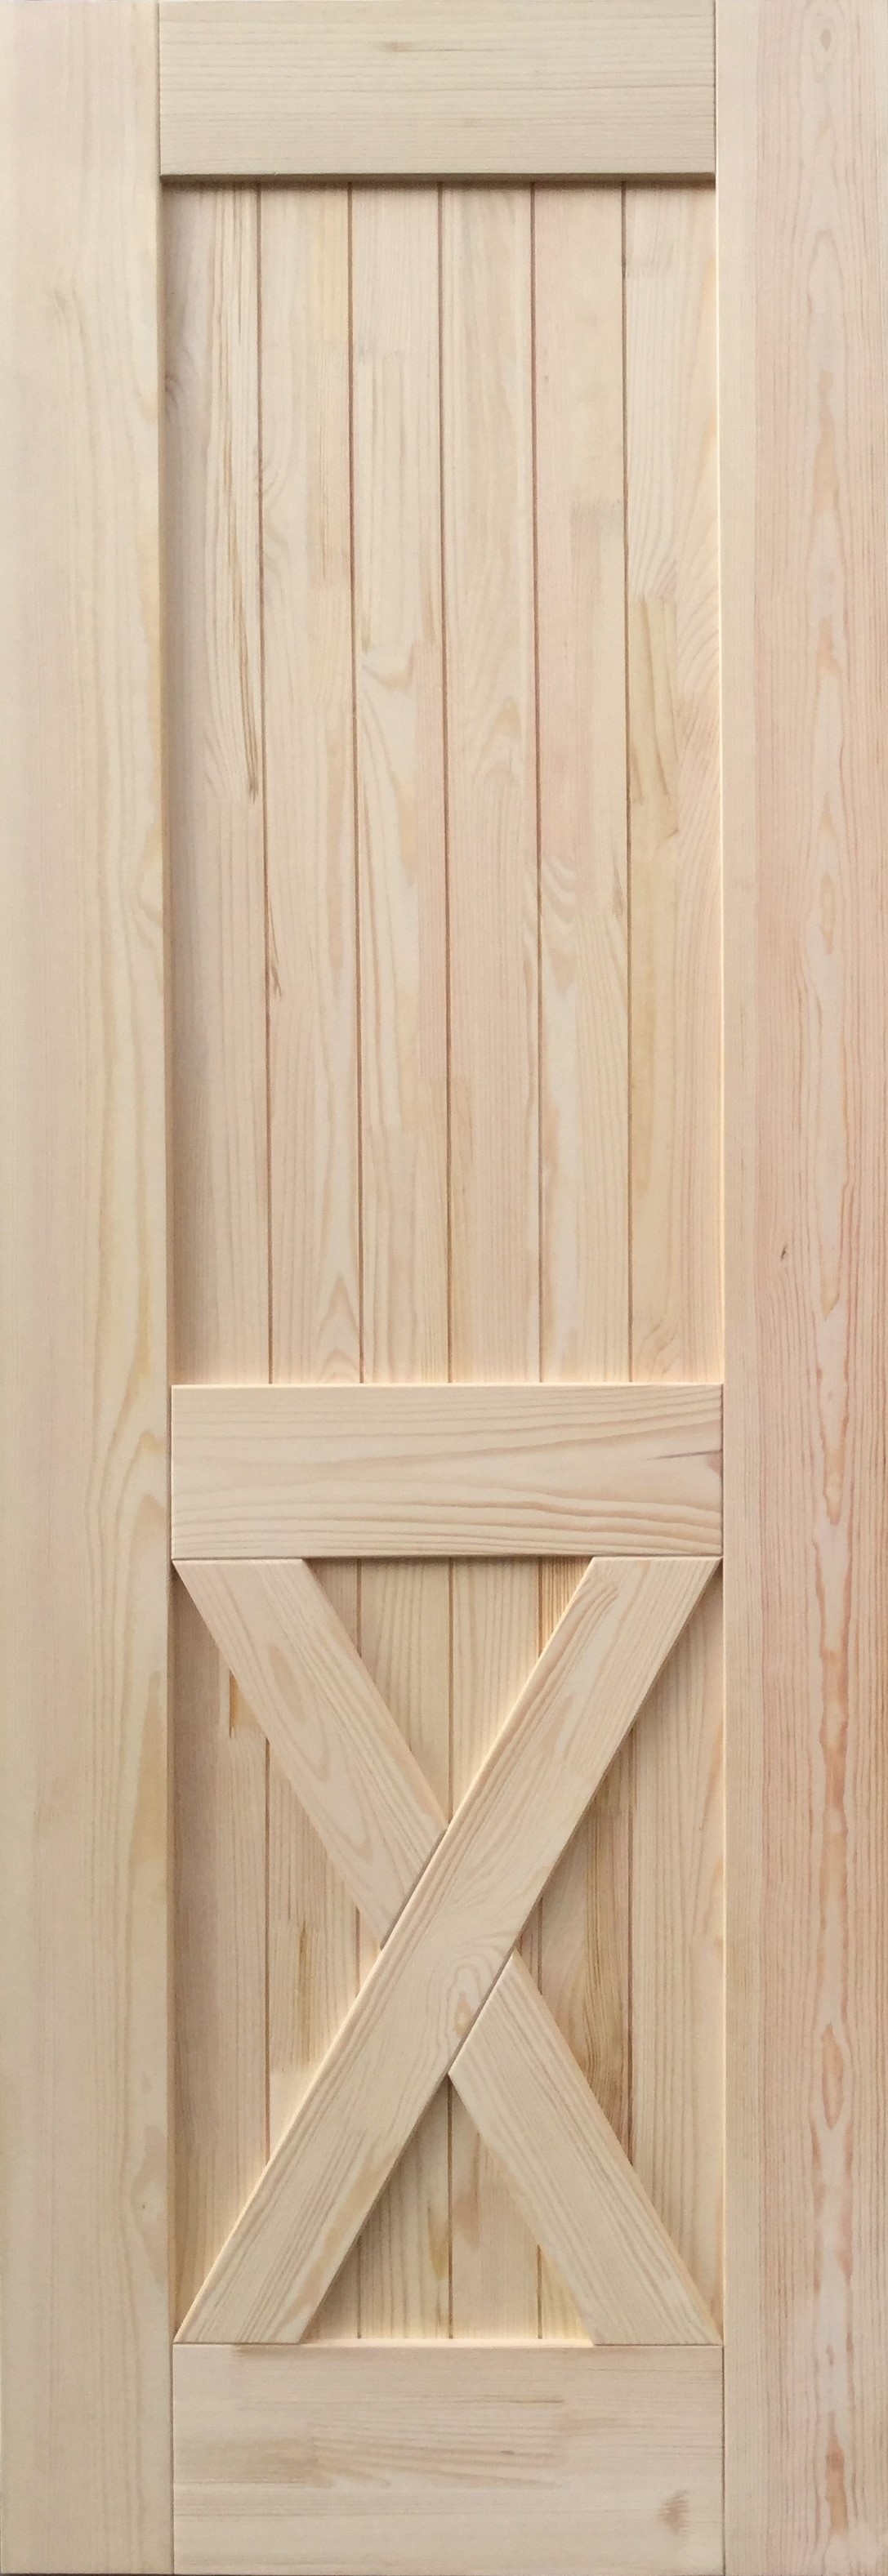 Дверь деревянная межкомнатная из массива сосны, Прованс, 10